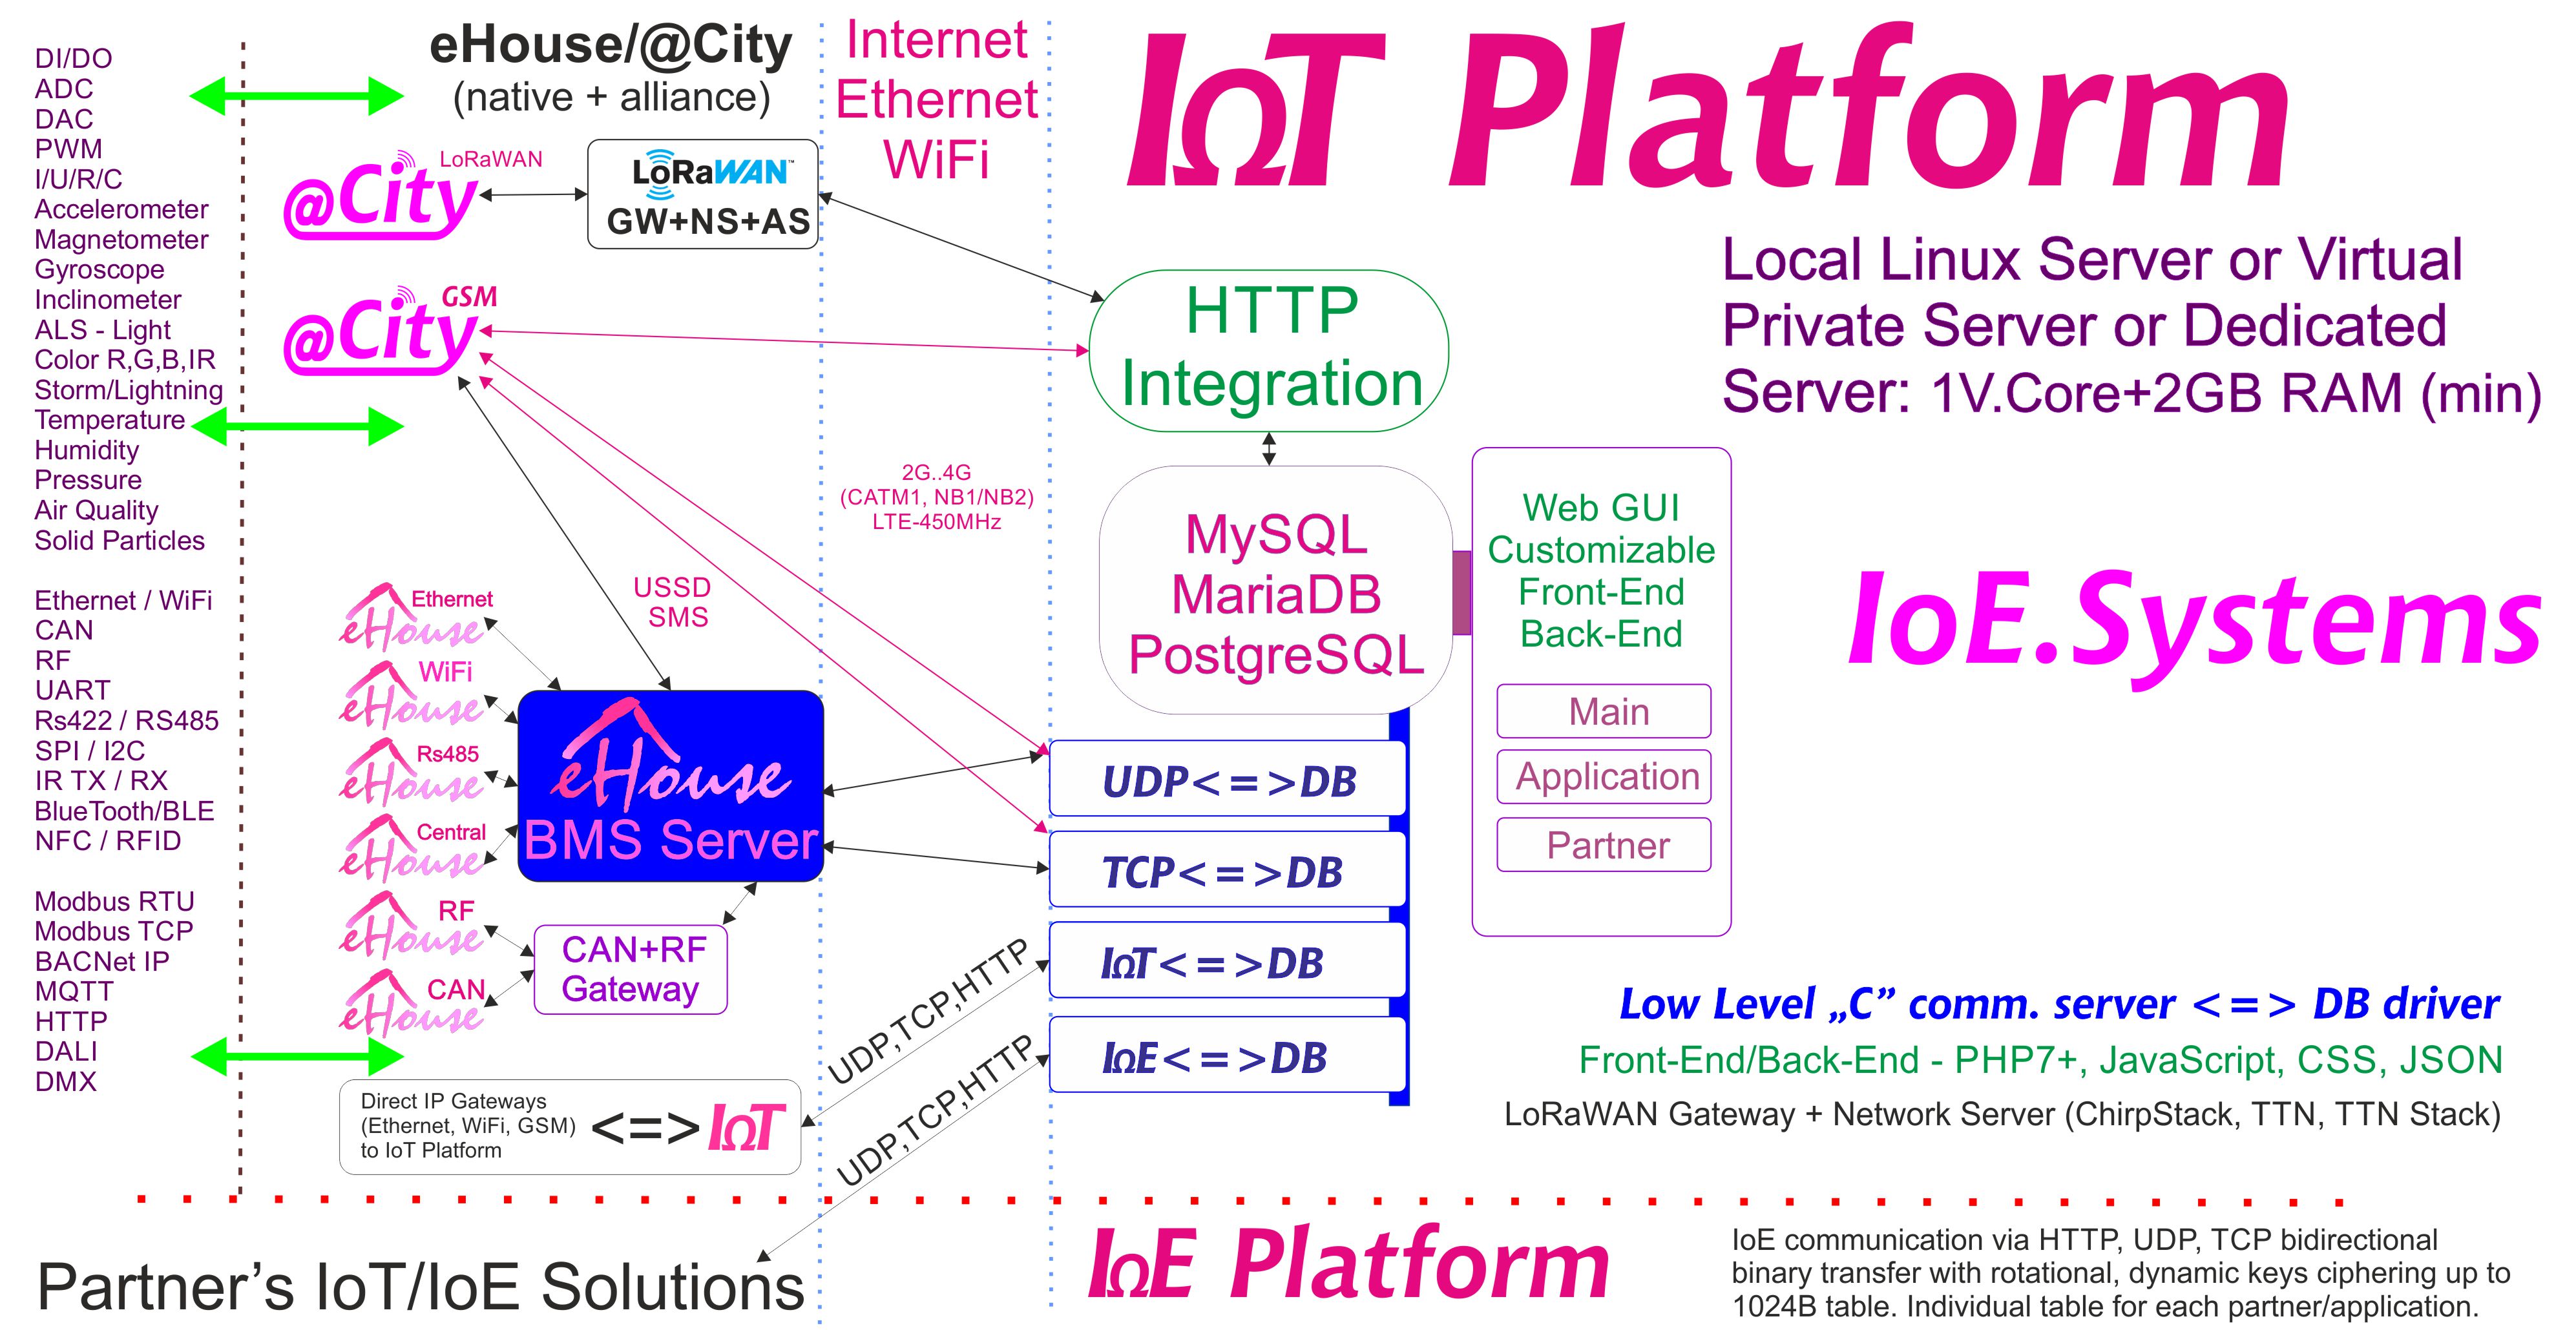 eHouse, сервернае праграмнае забеспячэнне eCity BAS, BMS, IoE, сістэмы IoT і платформа